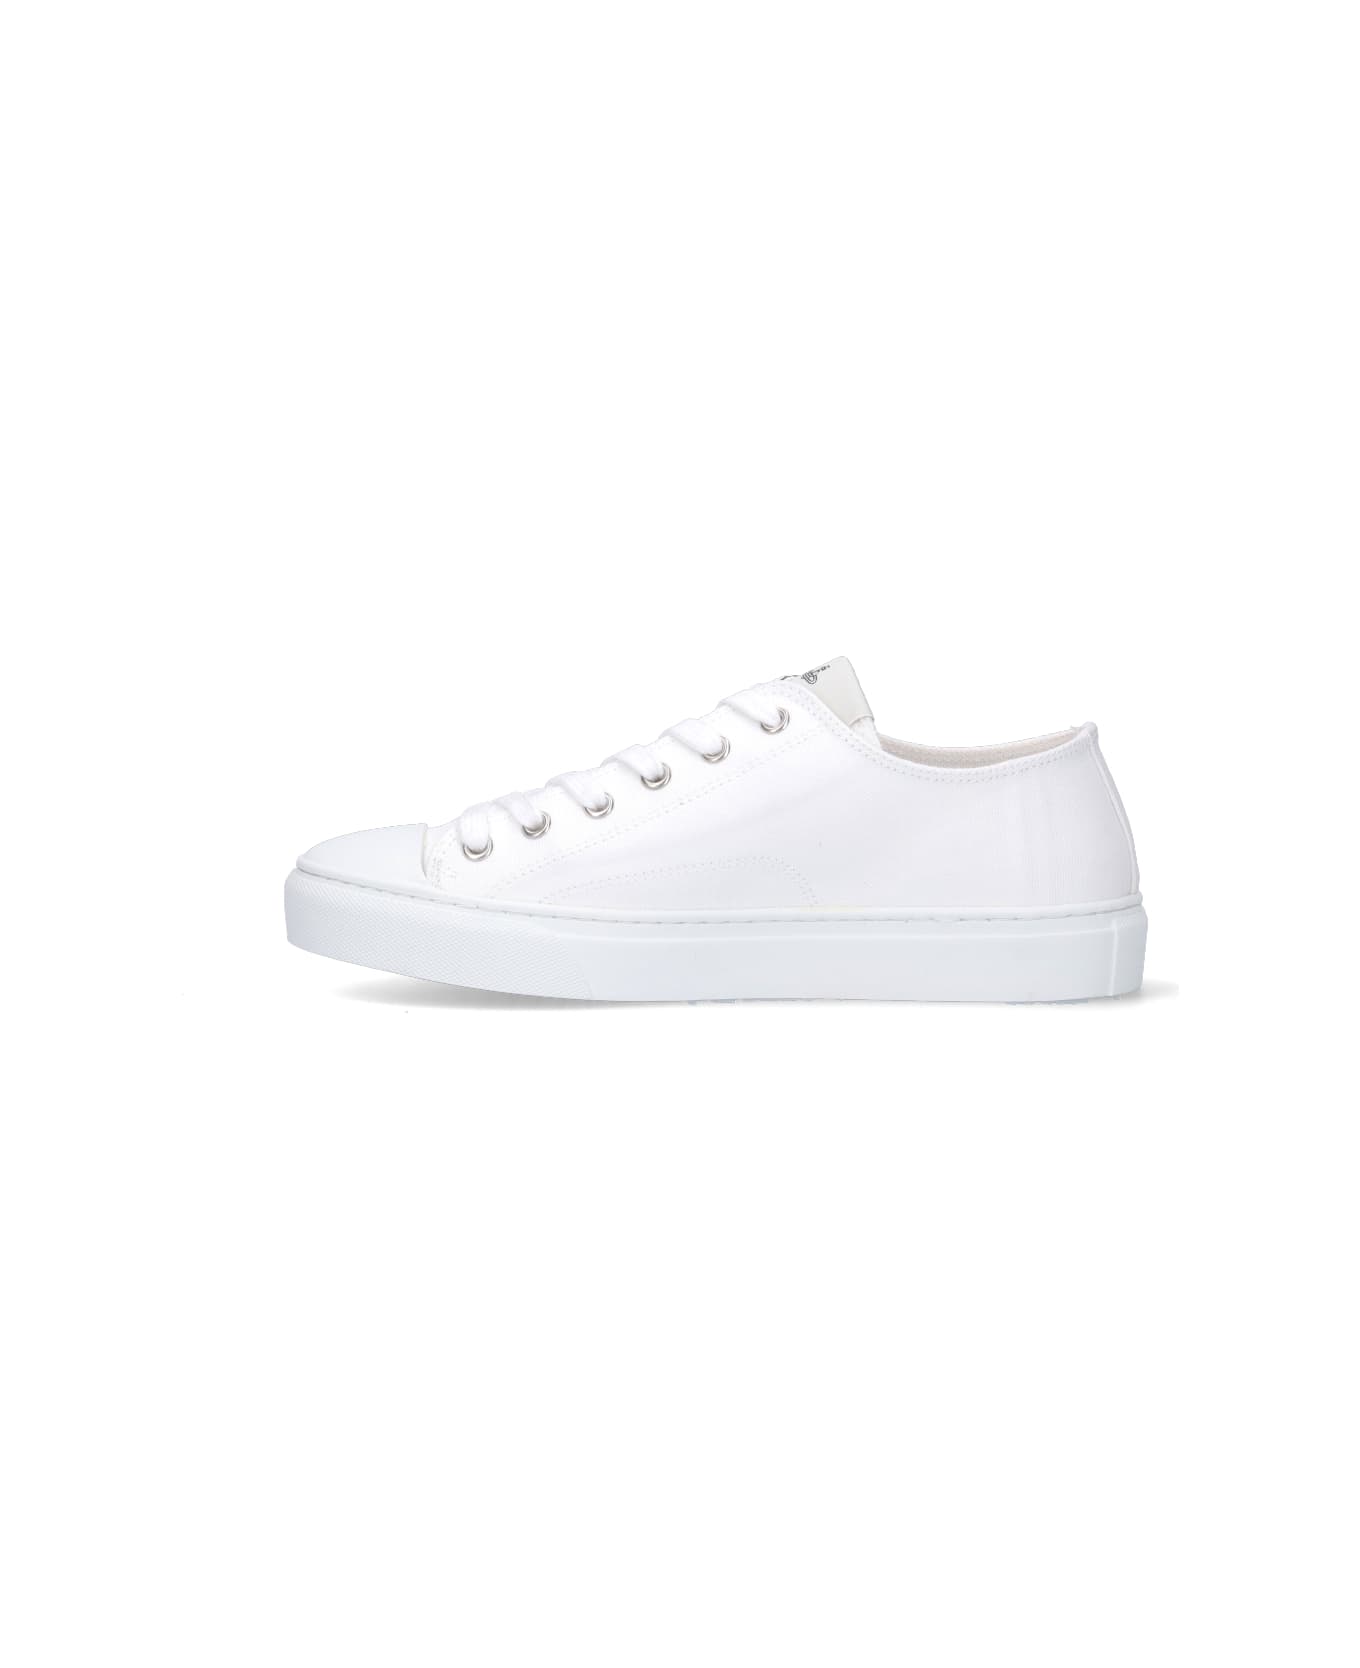 Vivienne Westwood "plimsoll Low Top 2.0" Sneakers - White